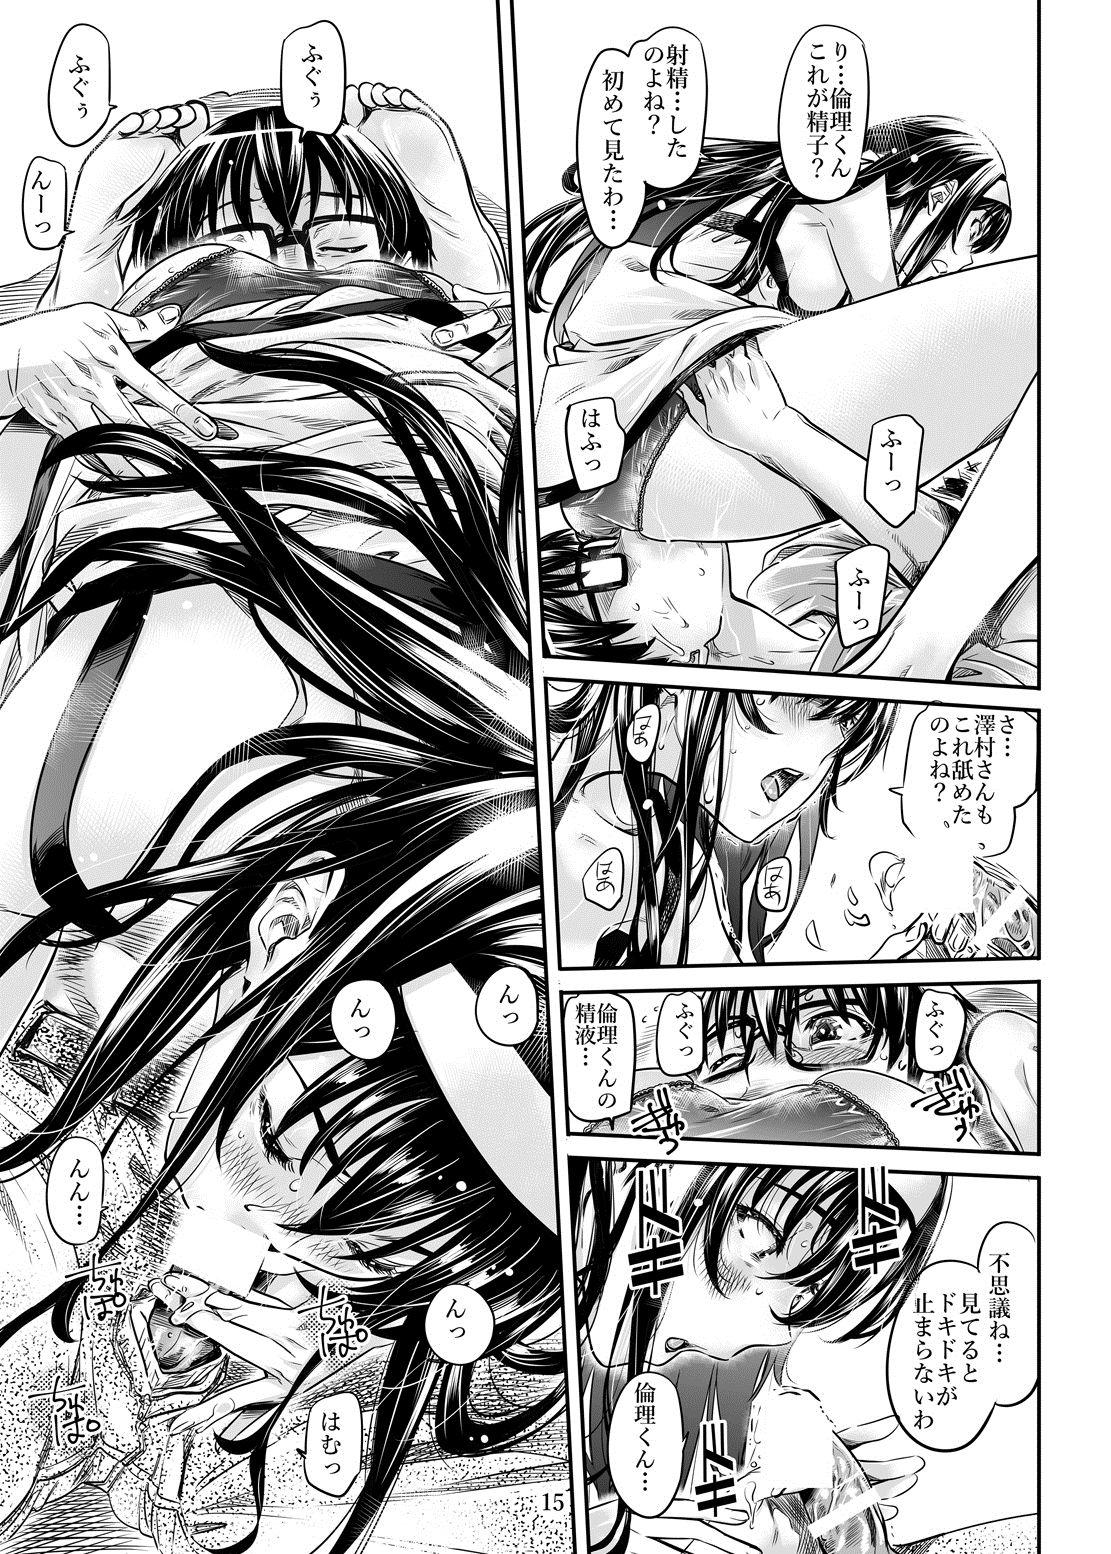 Saenai Heroine Series Vol. 2 - Saenai Namaashi Senpai no Ijirikata 13